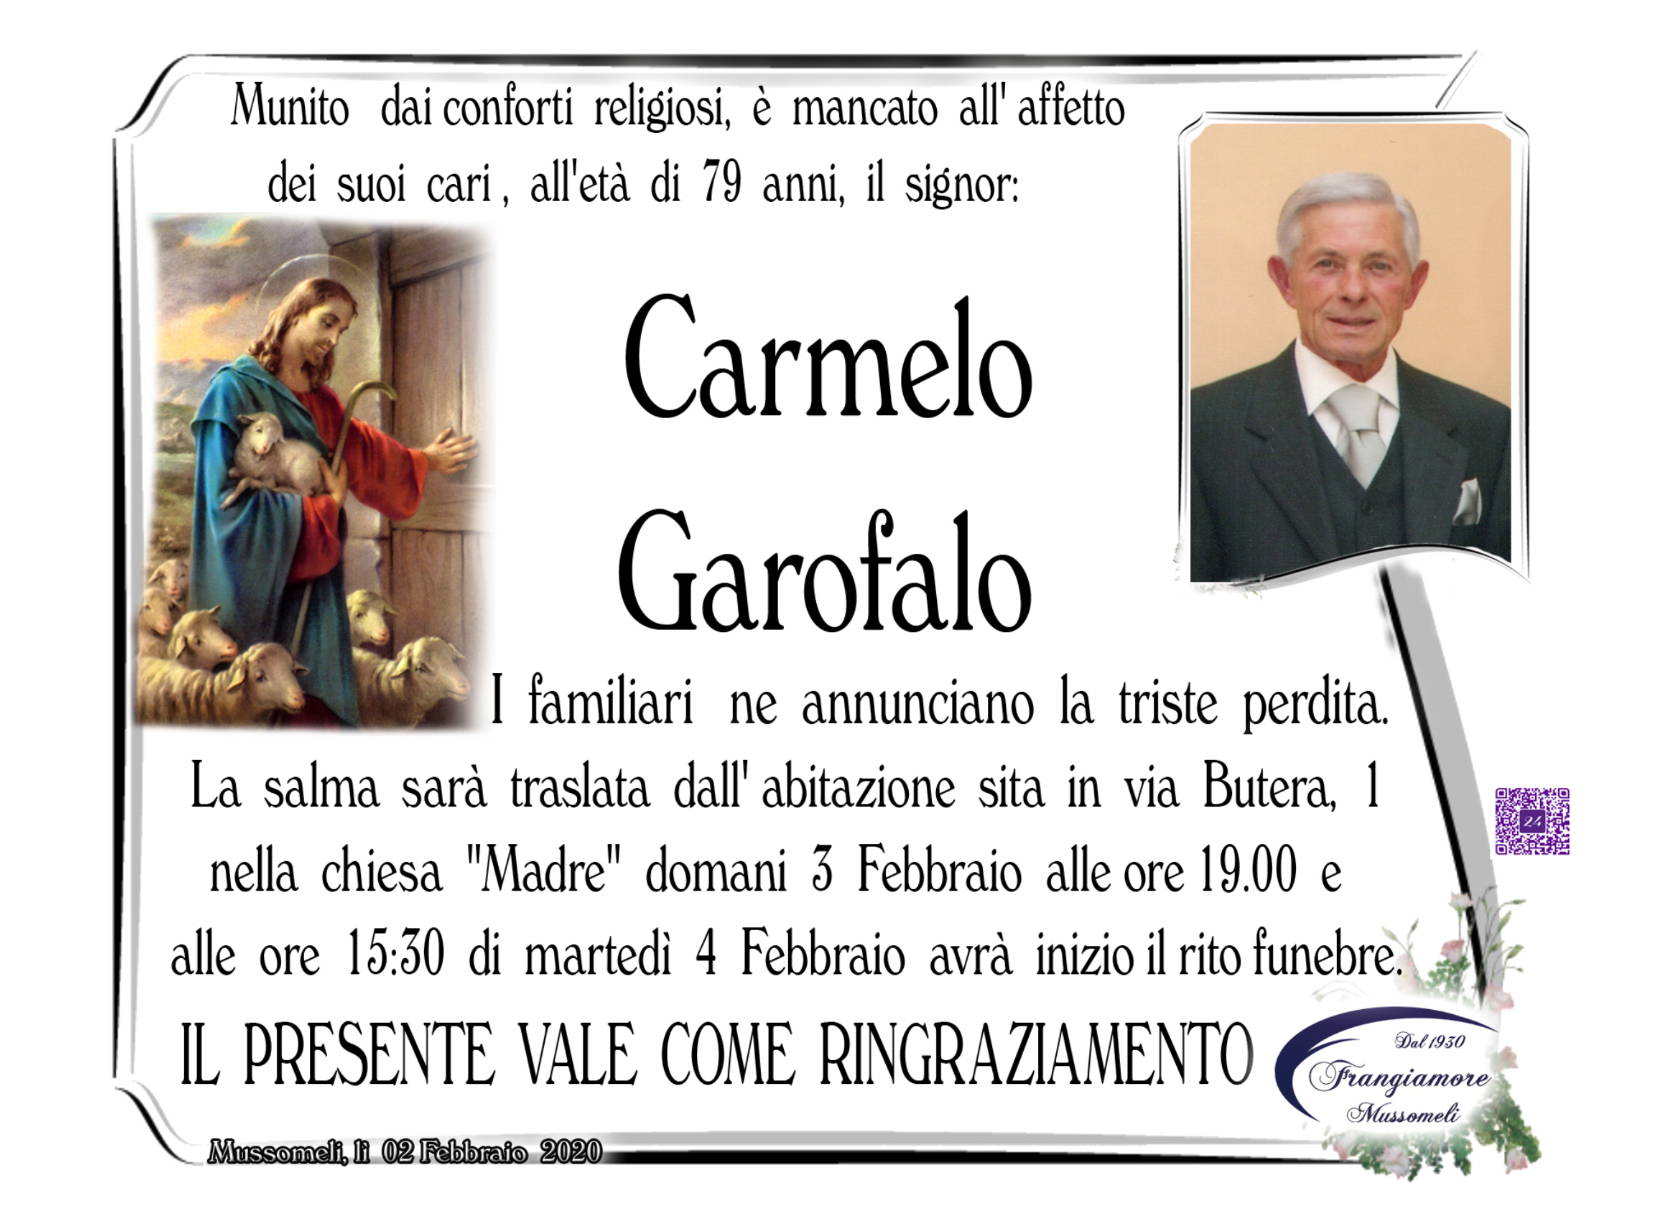 Carmelo Garofalo